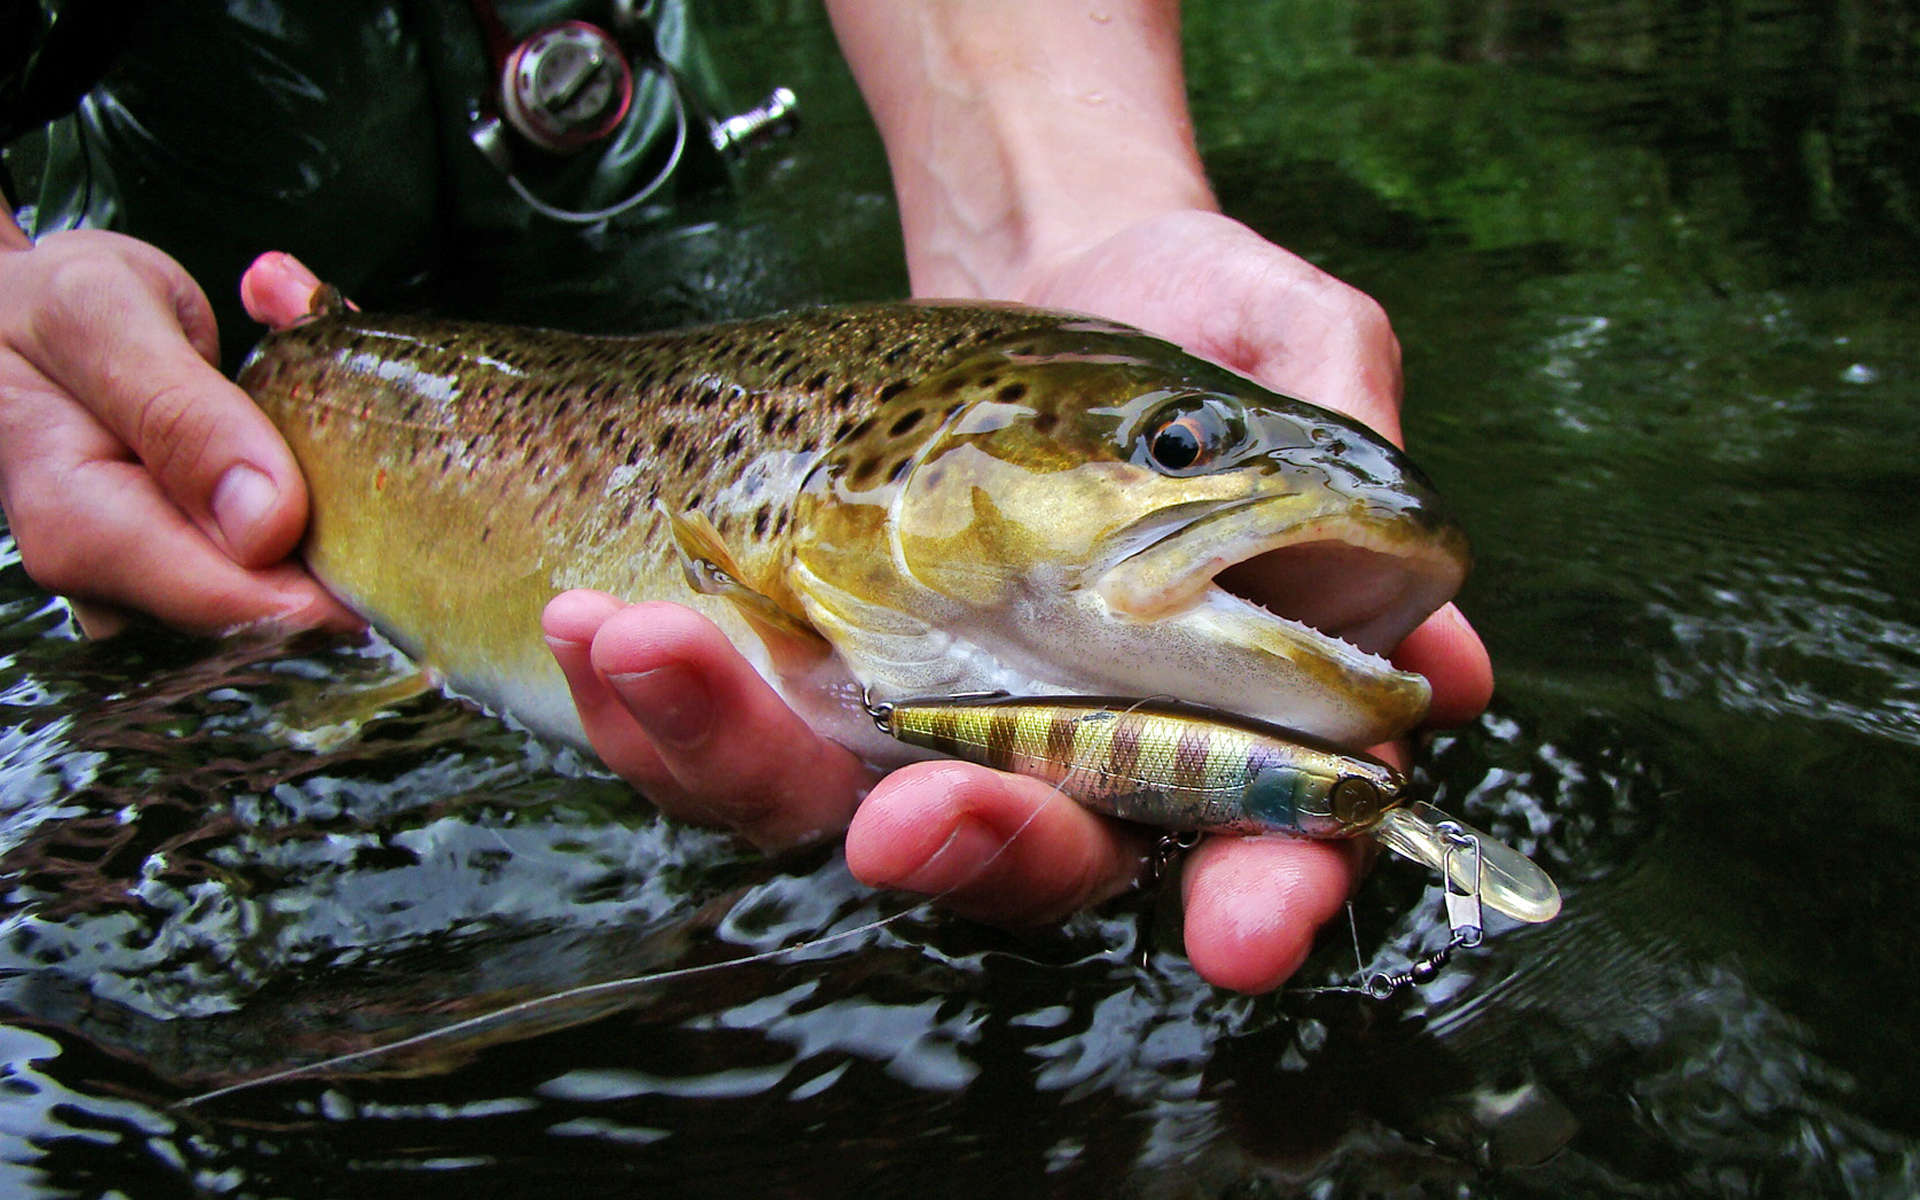 Truite fario dans la main d'un pêcheur (Crédits Illex Squirrel - Flickr)